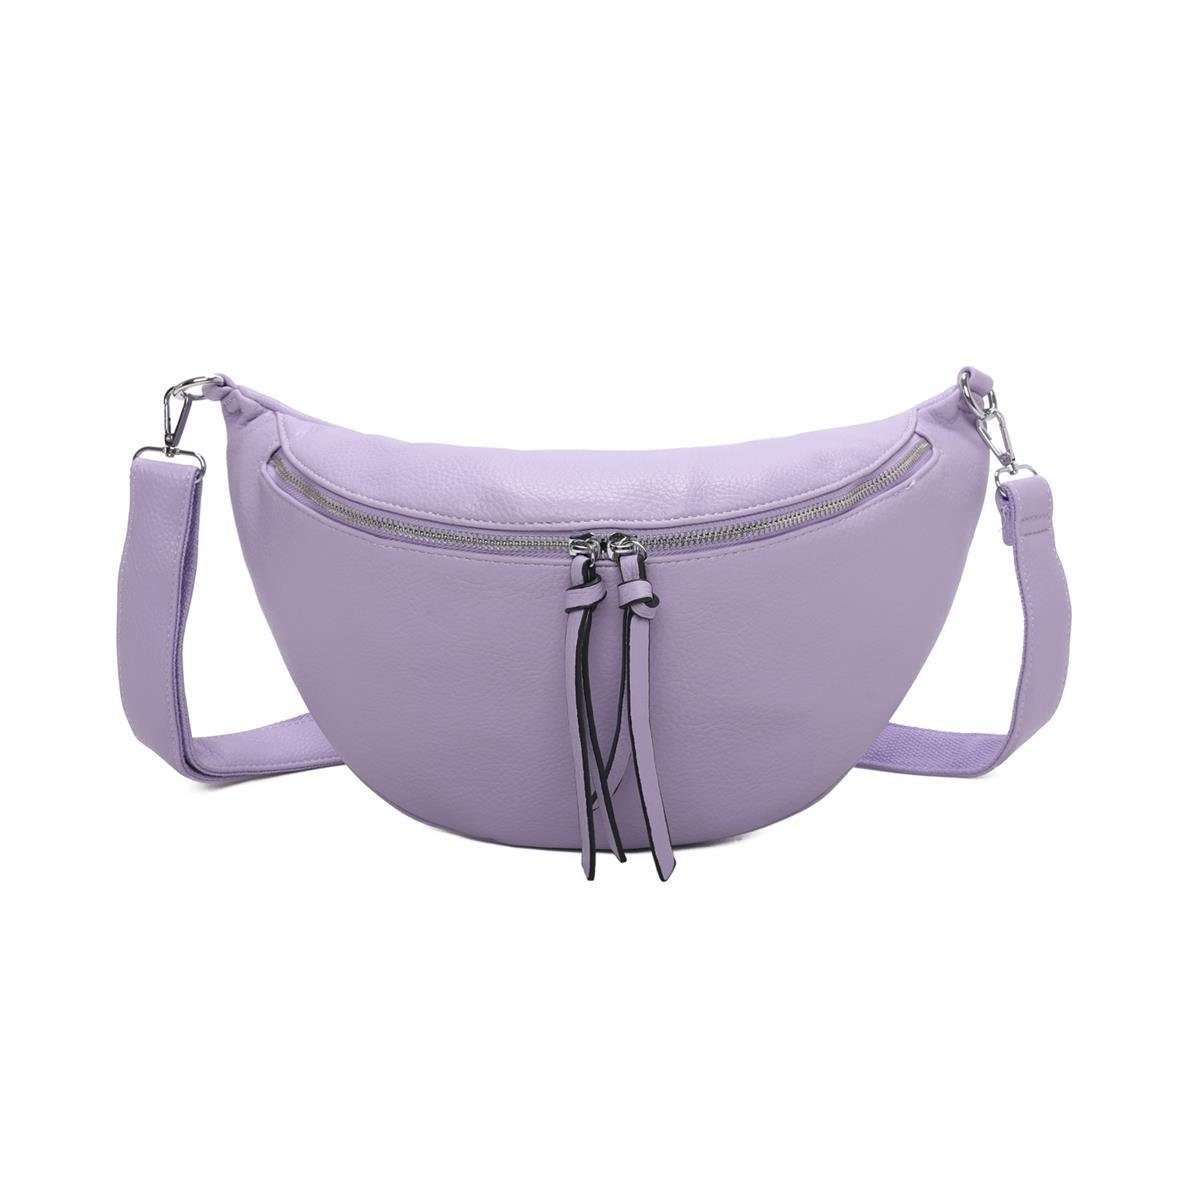 ITALYSHOP24 Schultertasche Damen XXL Tasche CrossBody Body Bag Brusttasche, als CrossOver, Umhängetasche tragbar, Hüfttasche